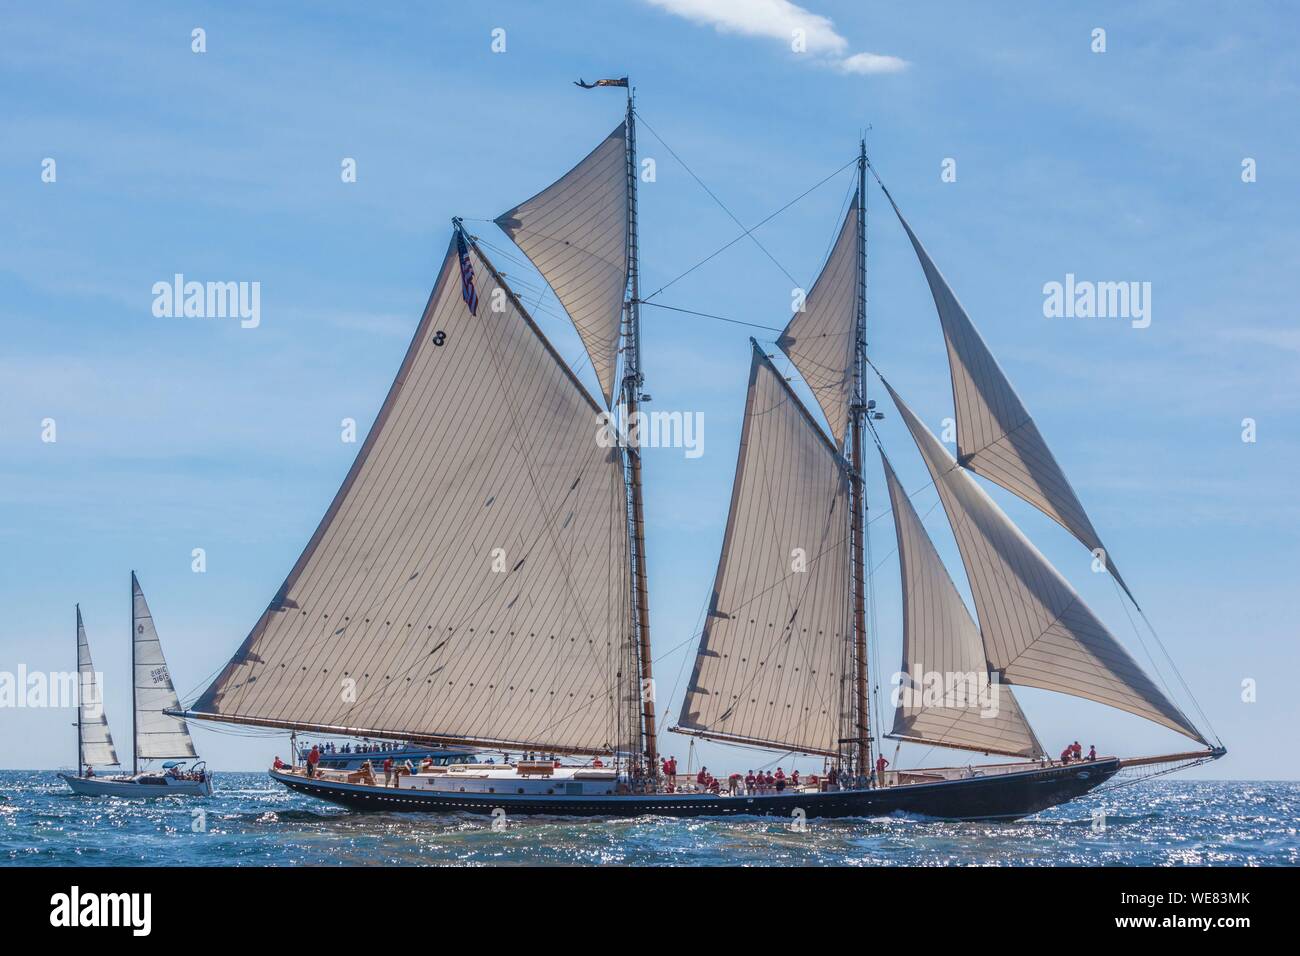 Stati Uniti, New England, Massachusetts, Cape Ann, Gloucester, Gloucester Schooner Festival, goletta parade di vela Foto Stock